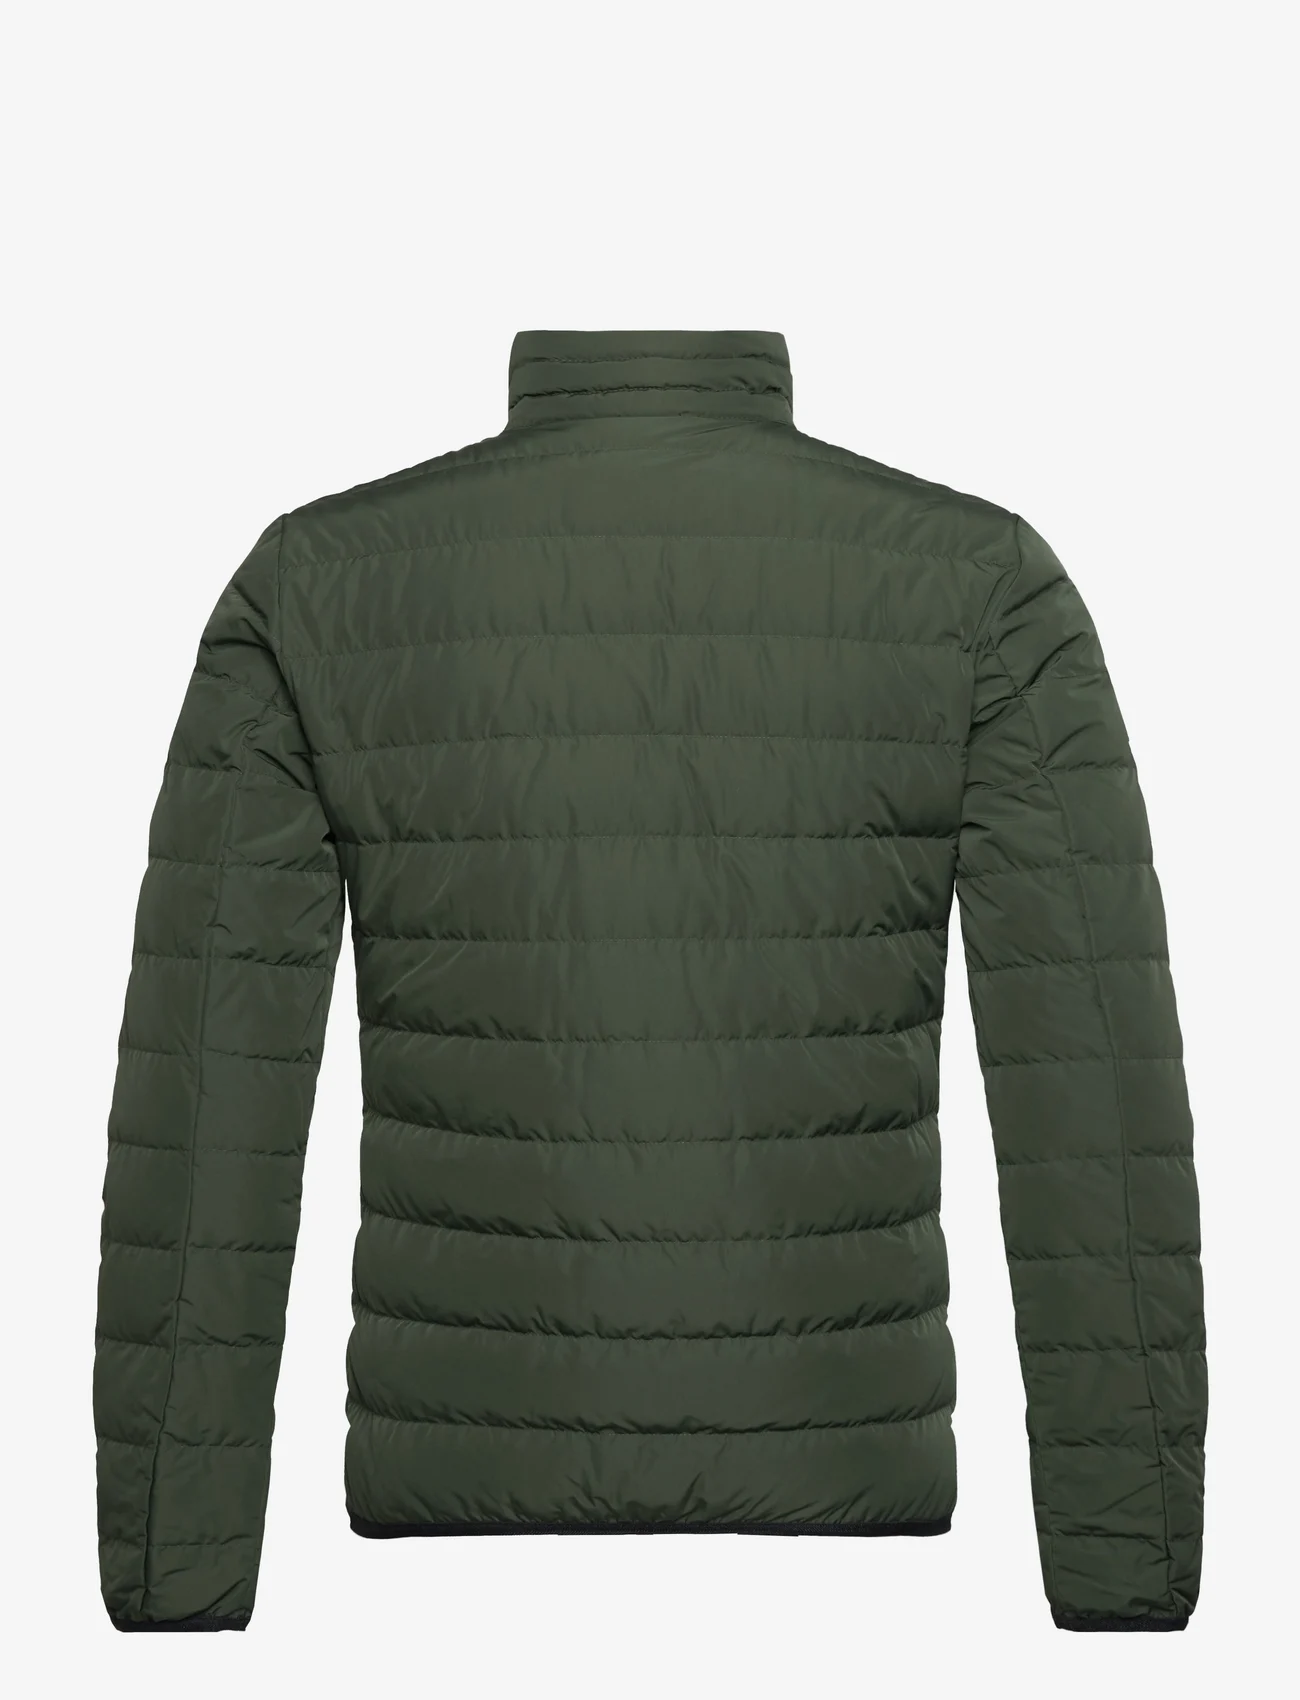 EA7 - OUTERWEAR - winter jackets - 1845-duffel bag - 1